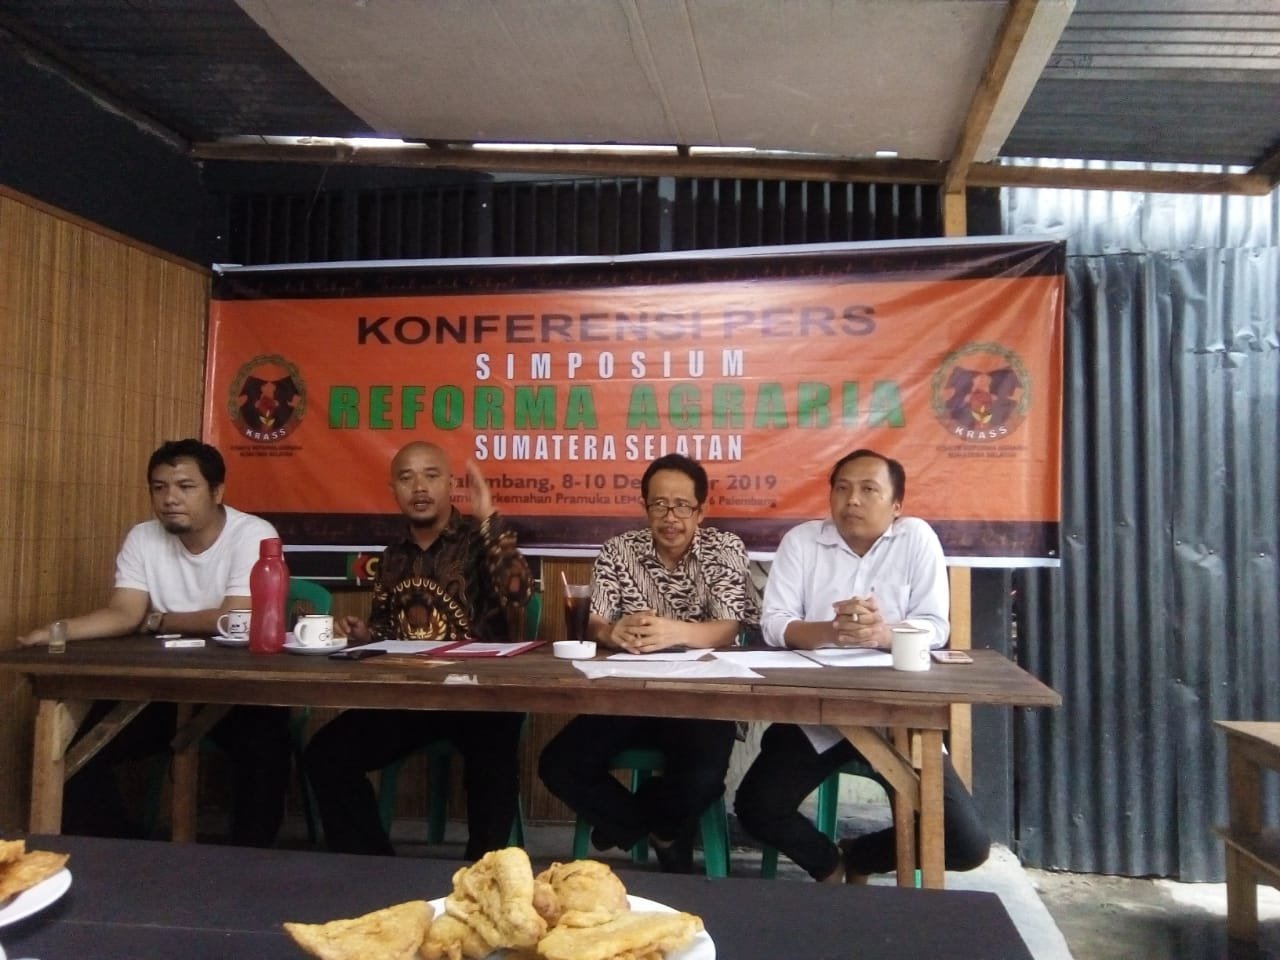 Dedek Chaniago , Komite Reforma Agraria Sumatera Selatan (KRASS) , Simposium Reforma Agraria